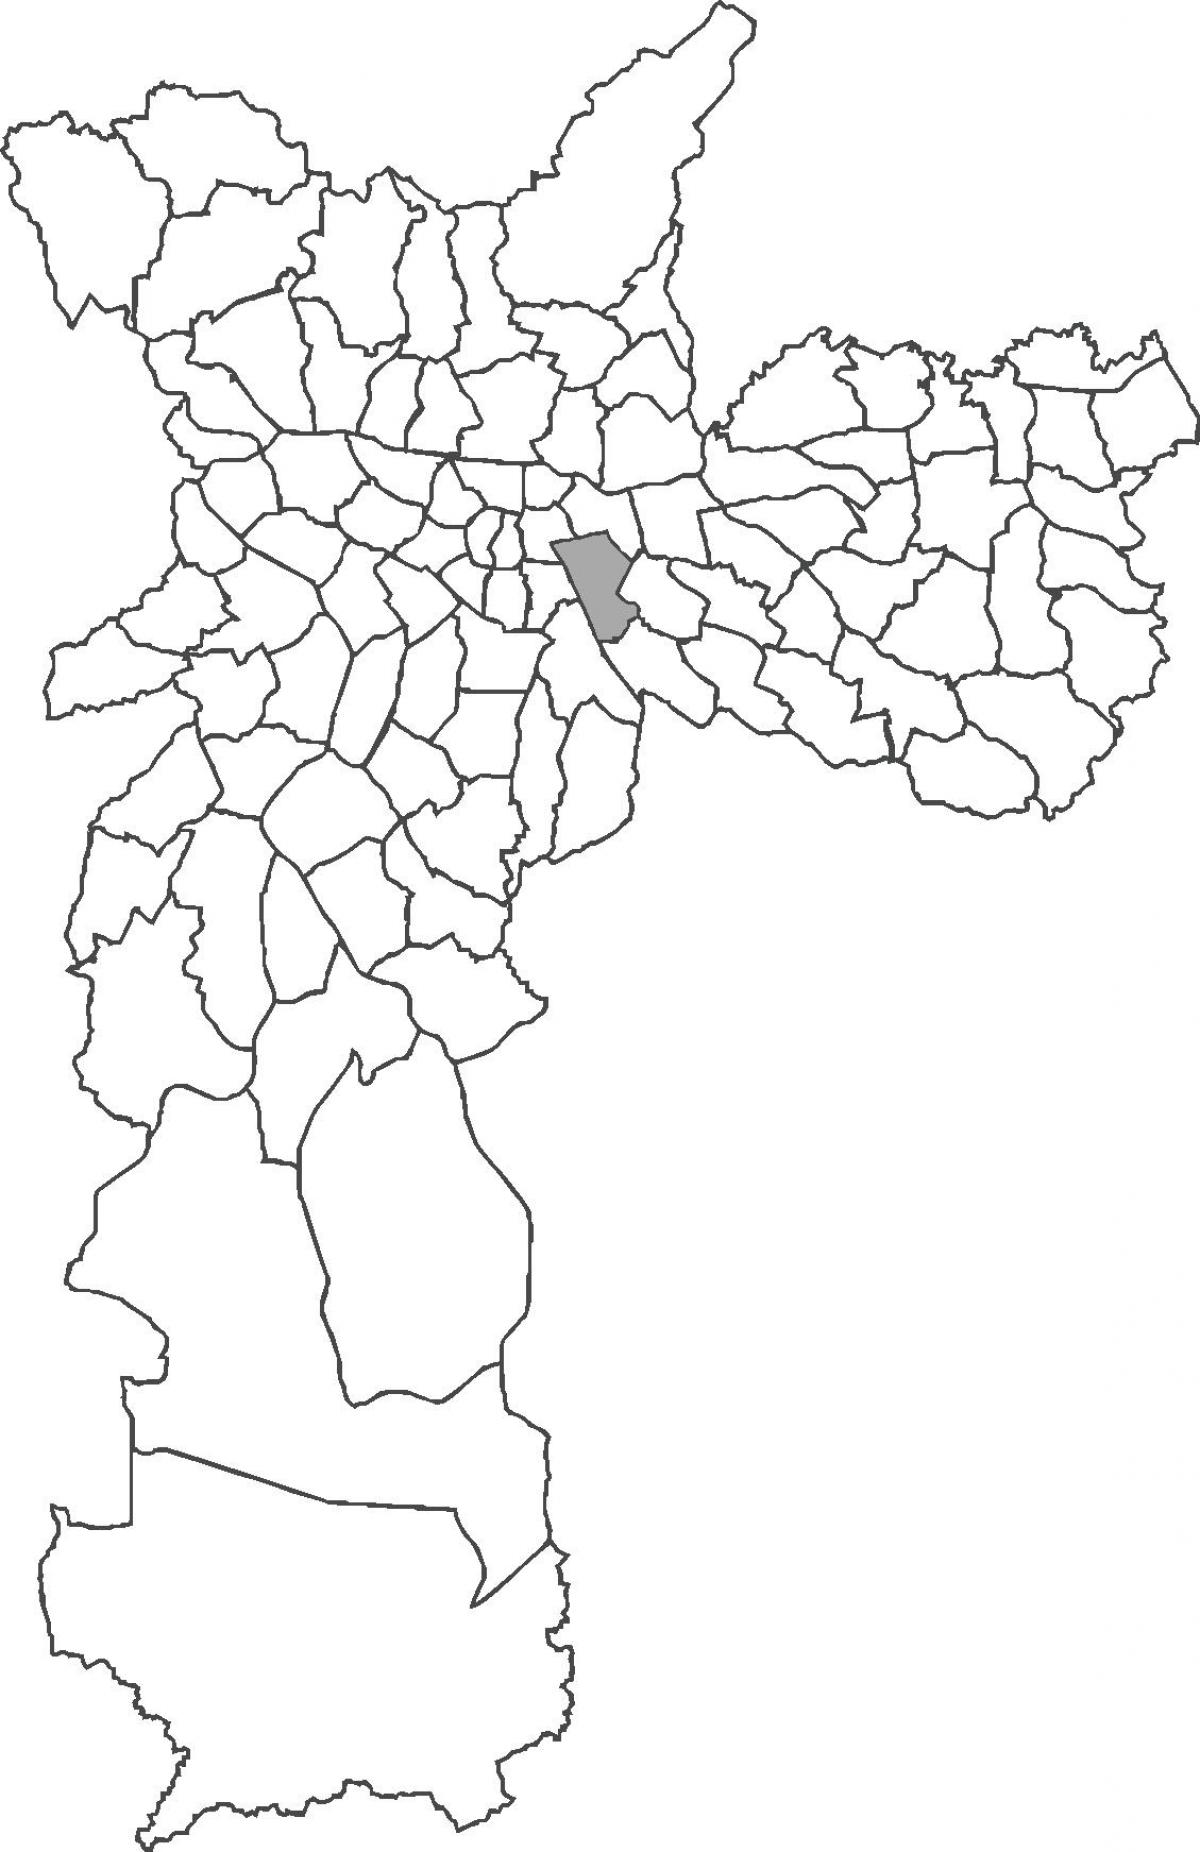 Mapa Mooca okres